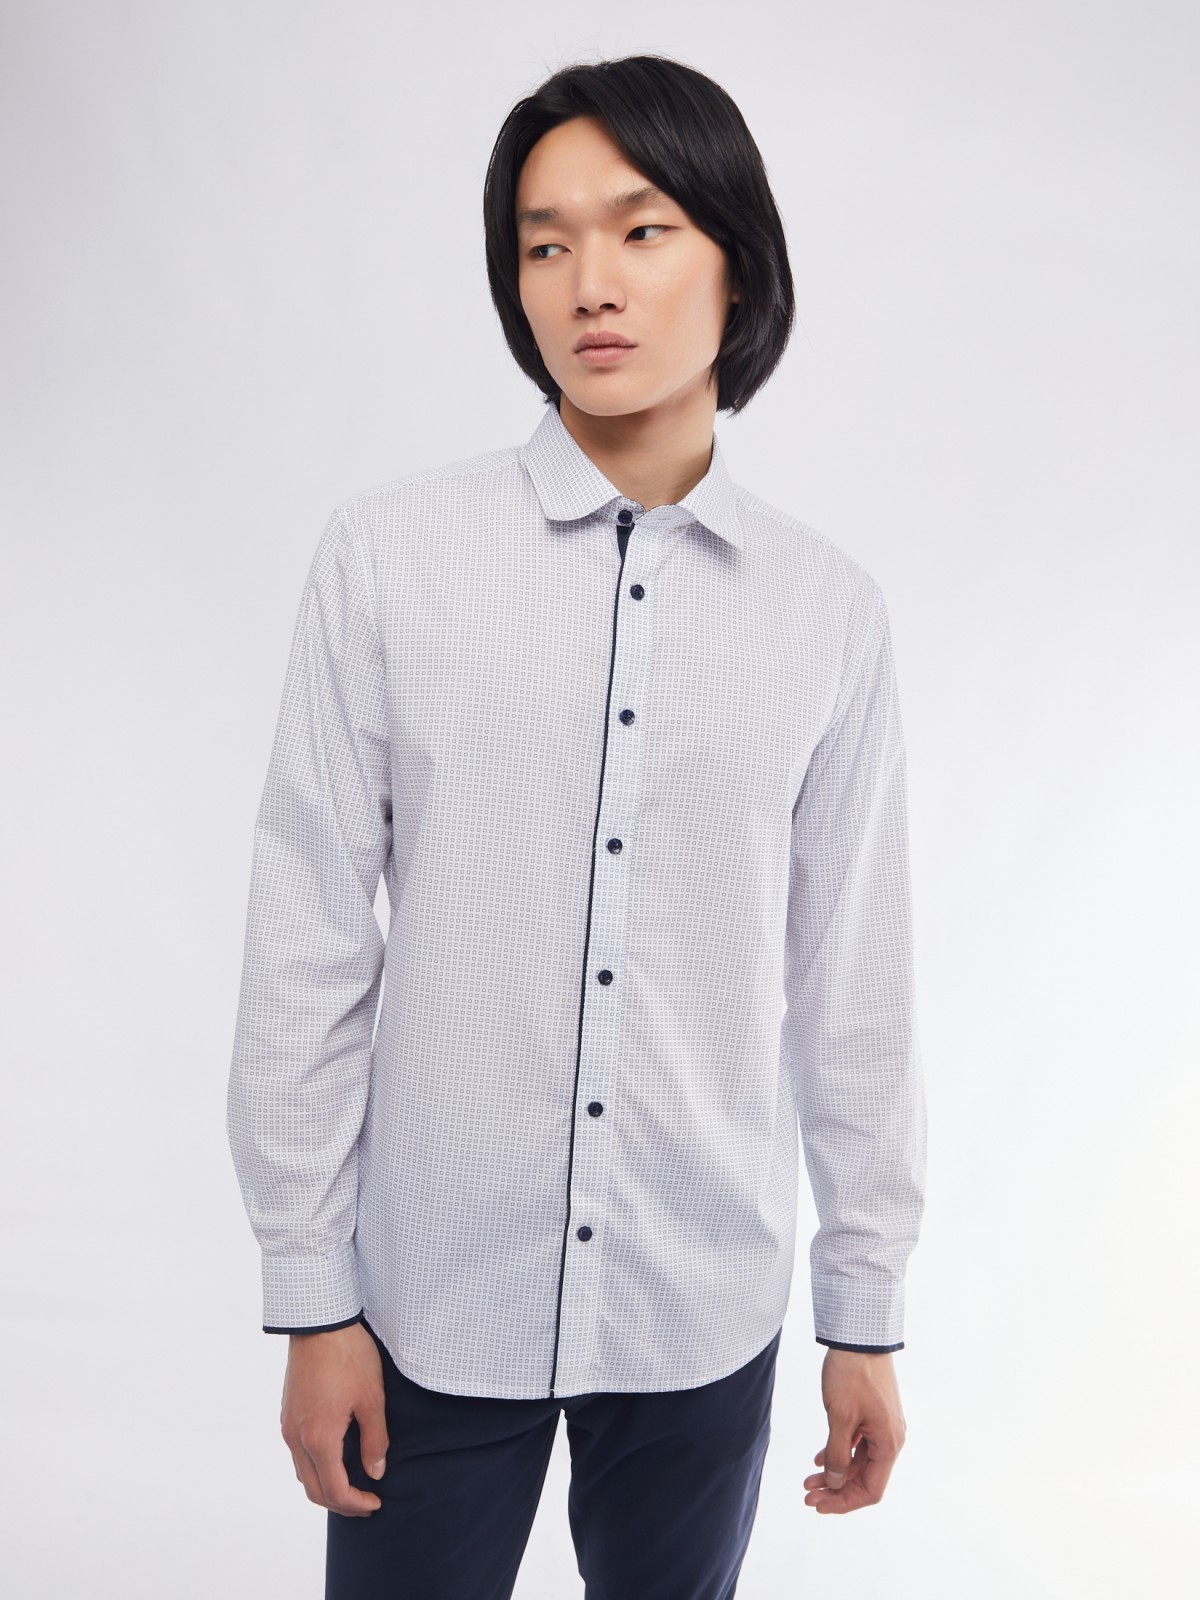 Офисная полуприталенная рубашка с мелким принтом zolla 01411217Y033, цвет белый, размер M - фото 3